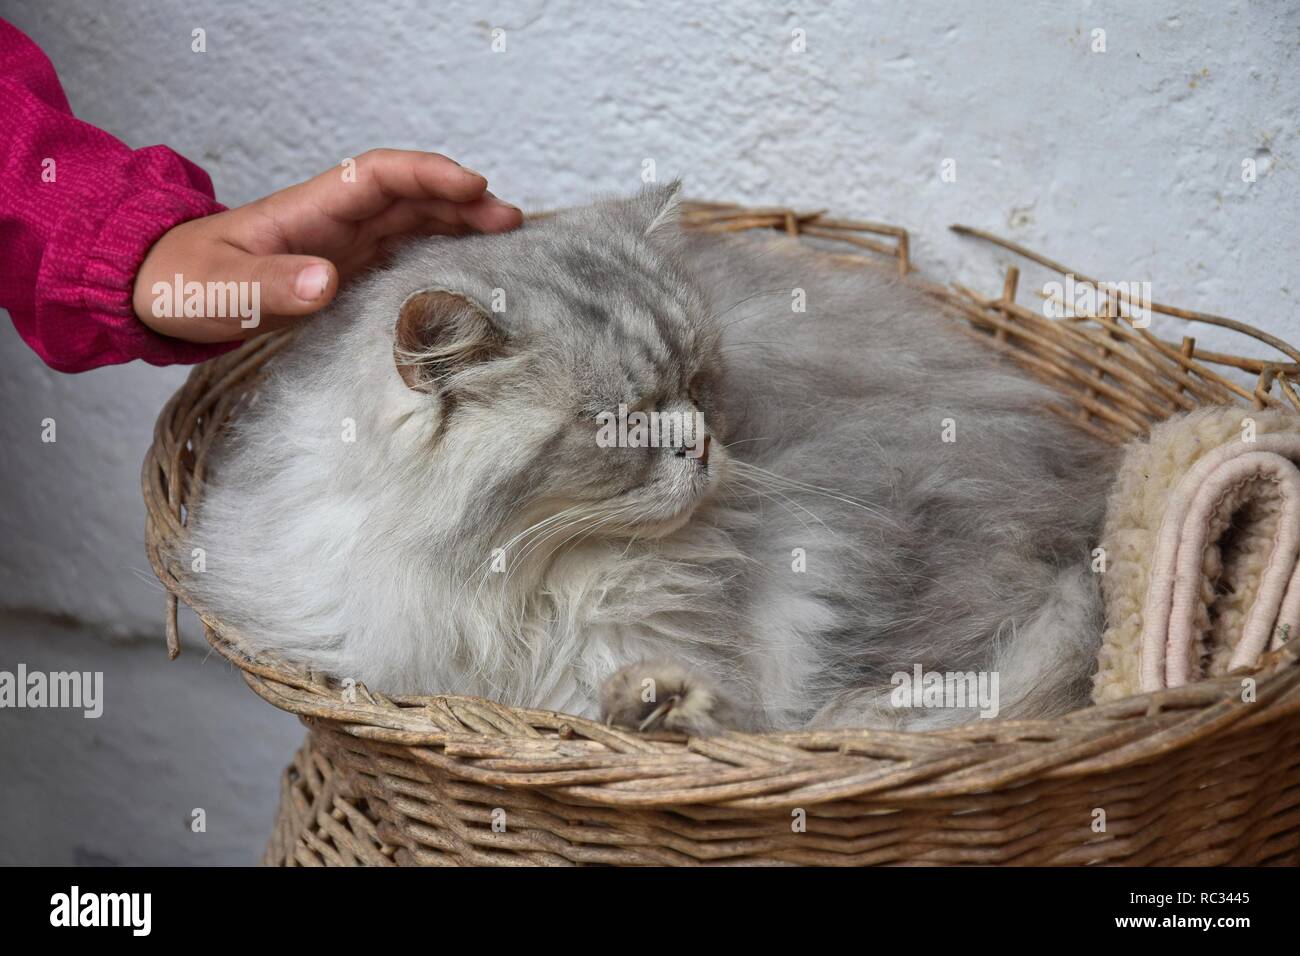 La mano de un niño acariciando un gato persa atigrado plateado, tumbado en una canasta. Foto de stock